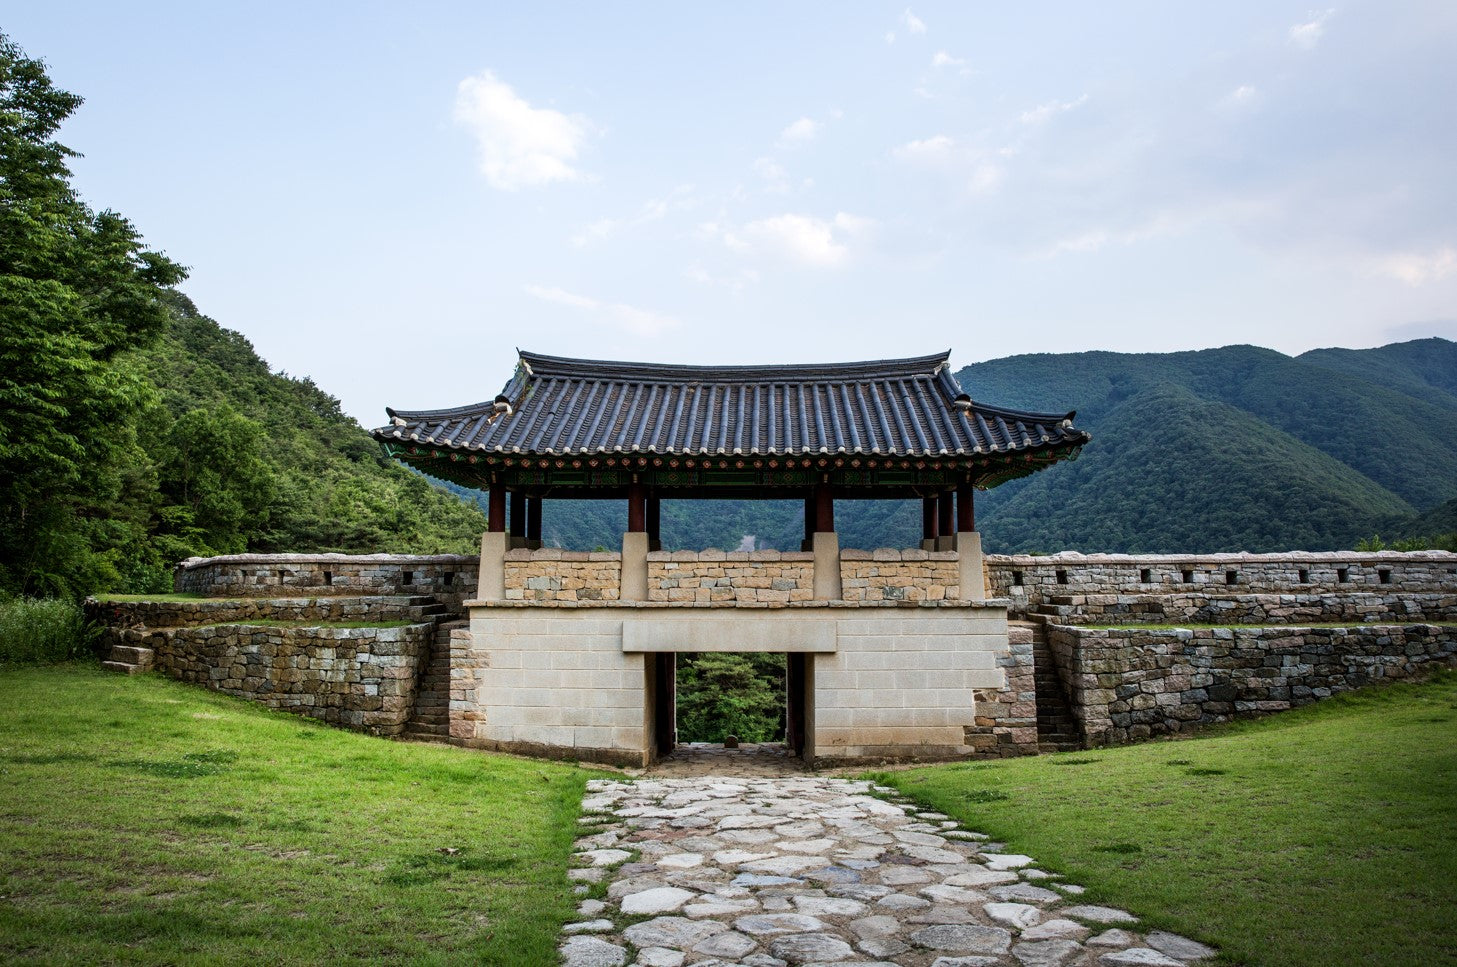 History of the Three Kingdoms of Korea